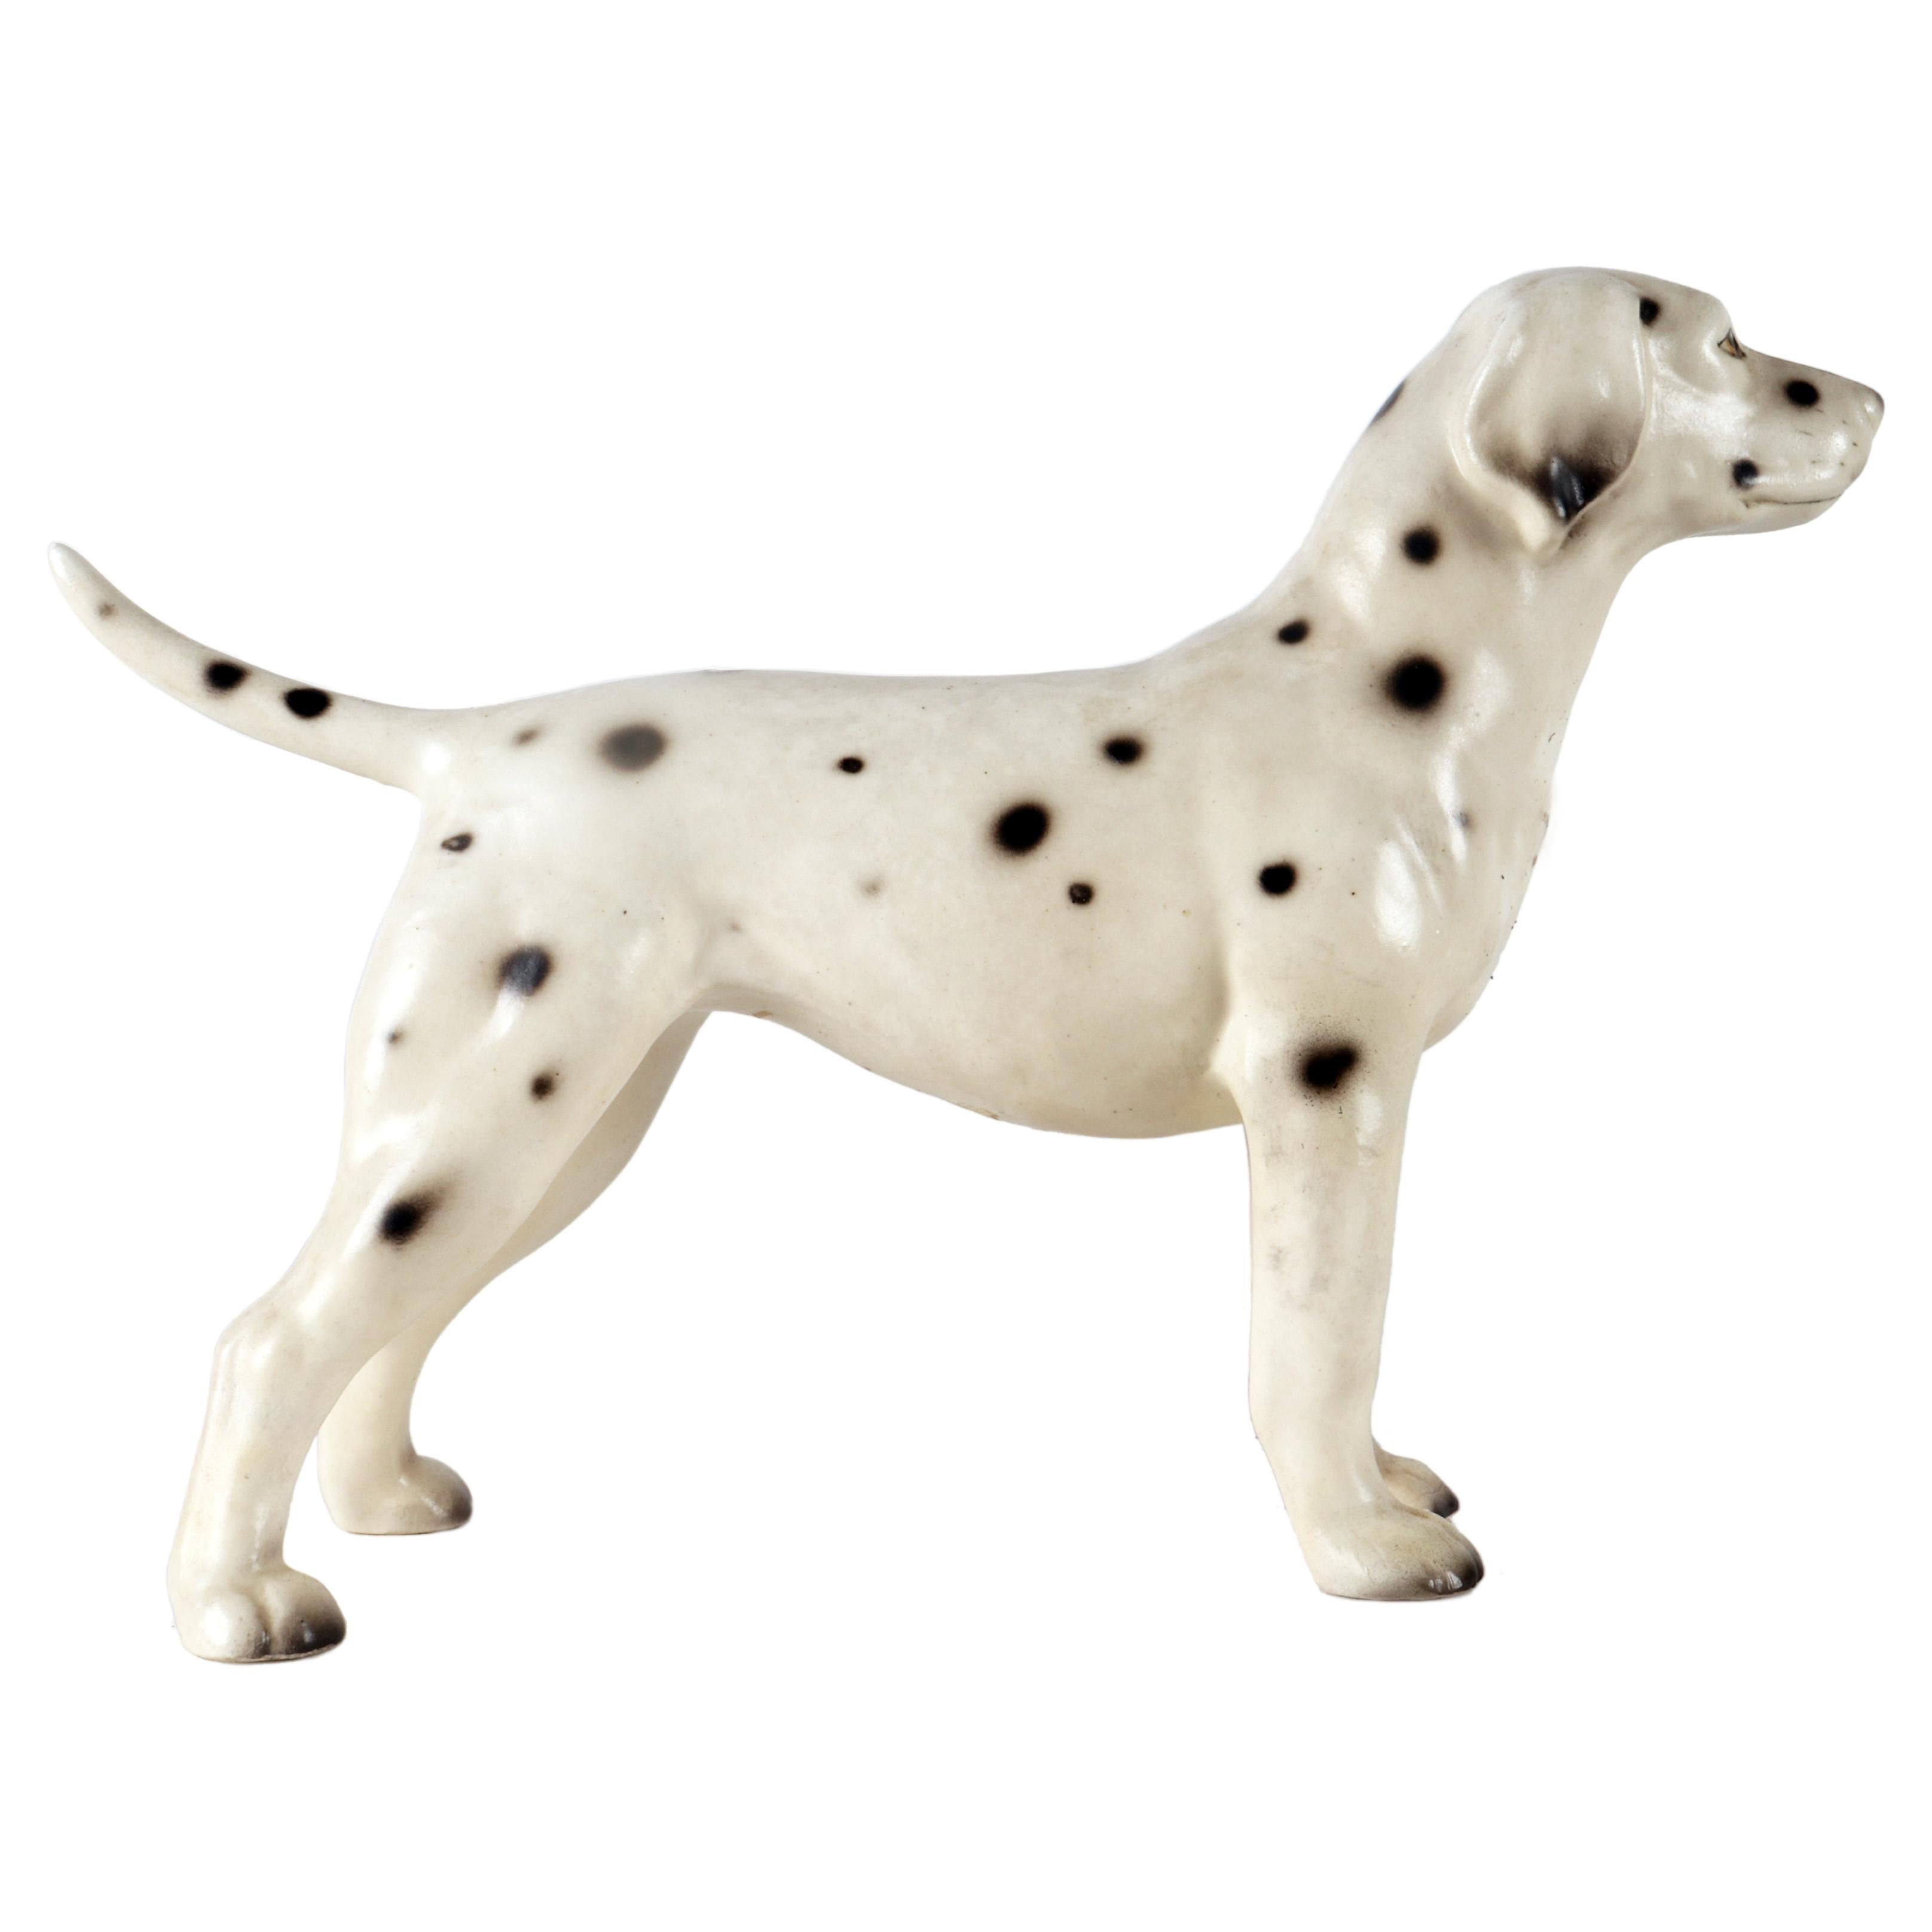 Keramikskulptur eines Dalmatinischen Hundes, England 1950.  